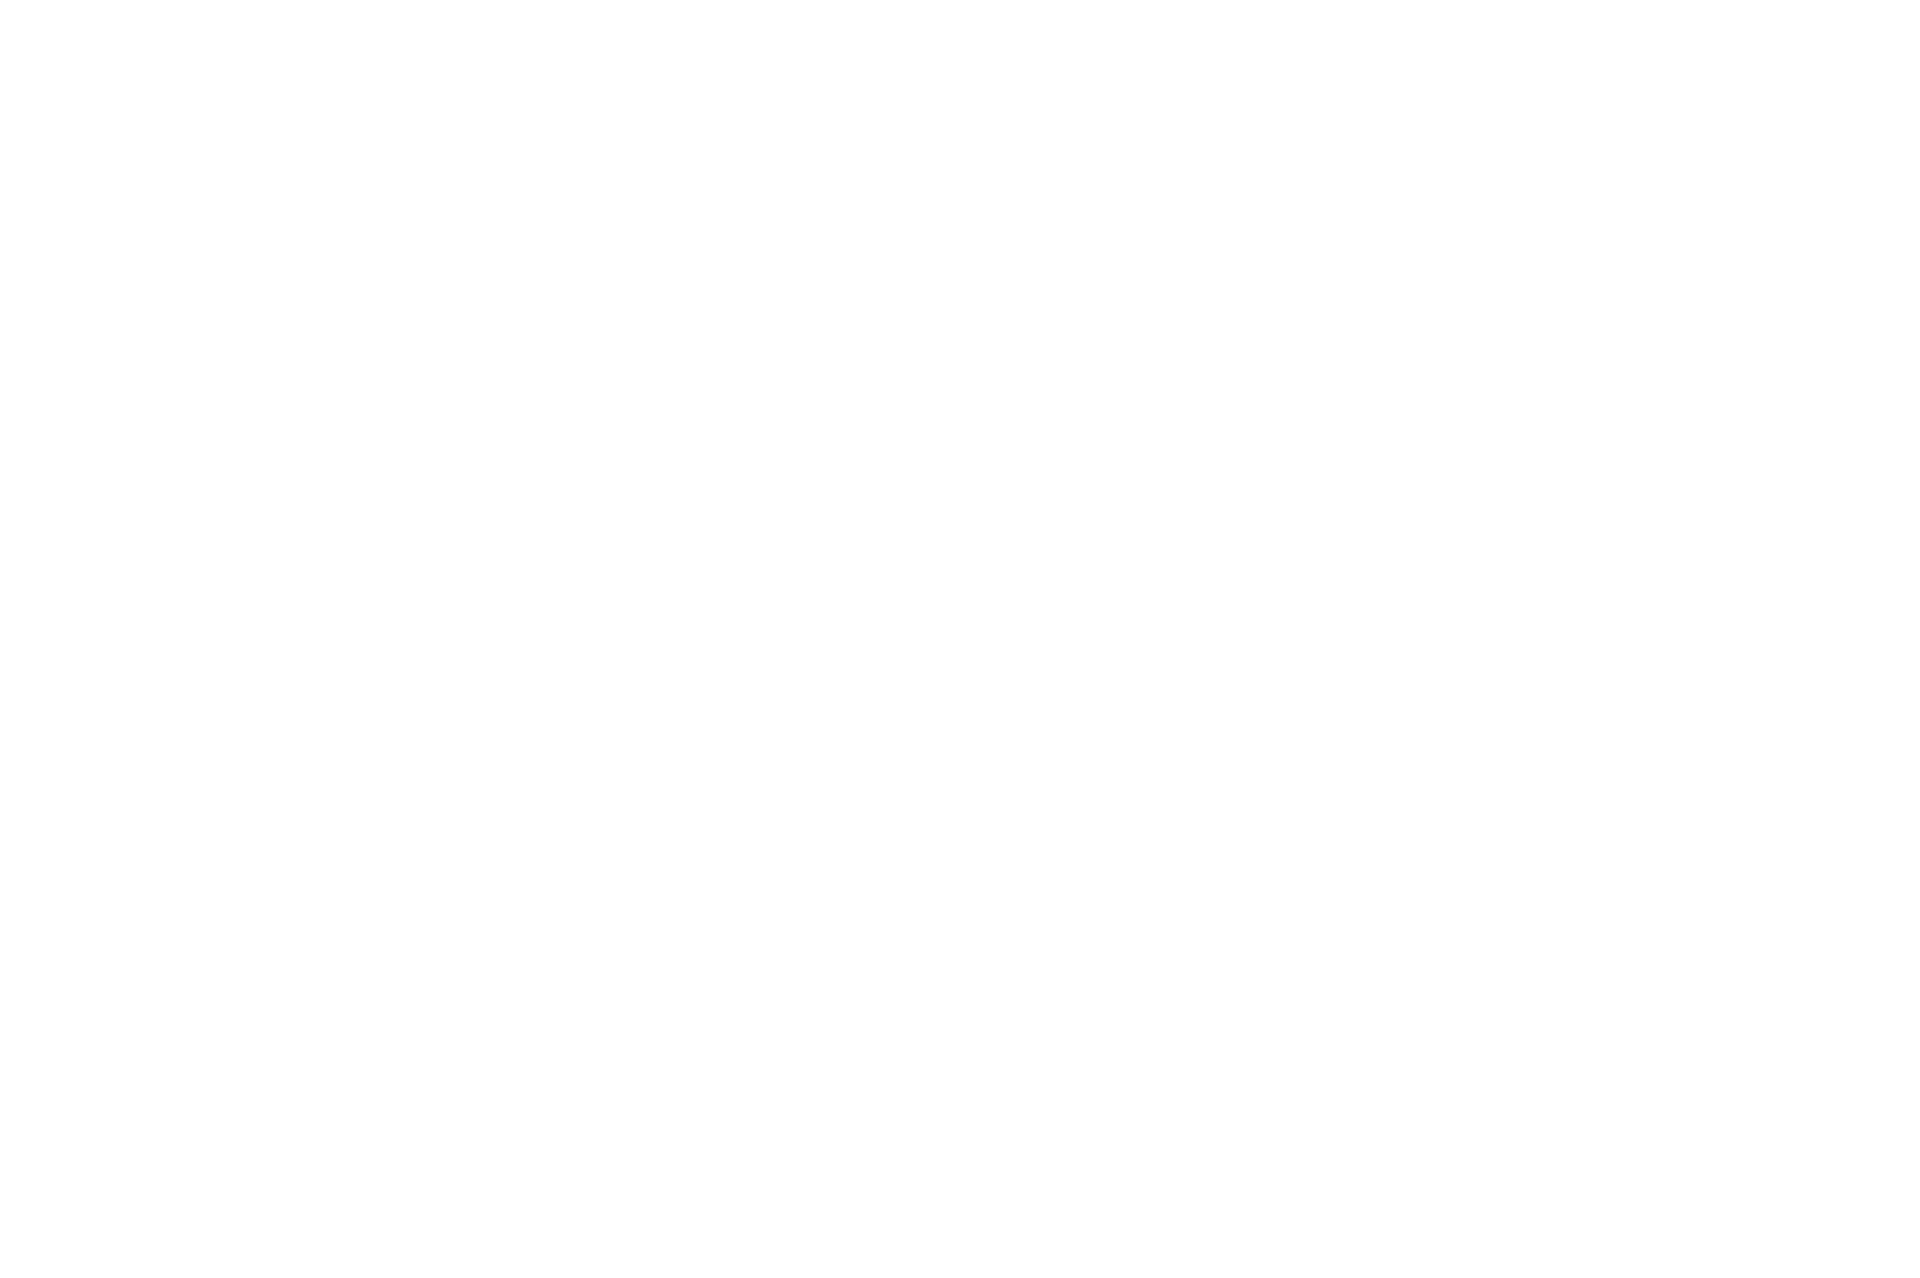 Leaning Cedar Ranch